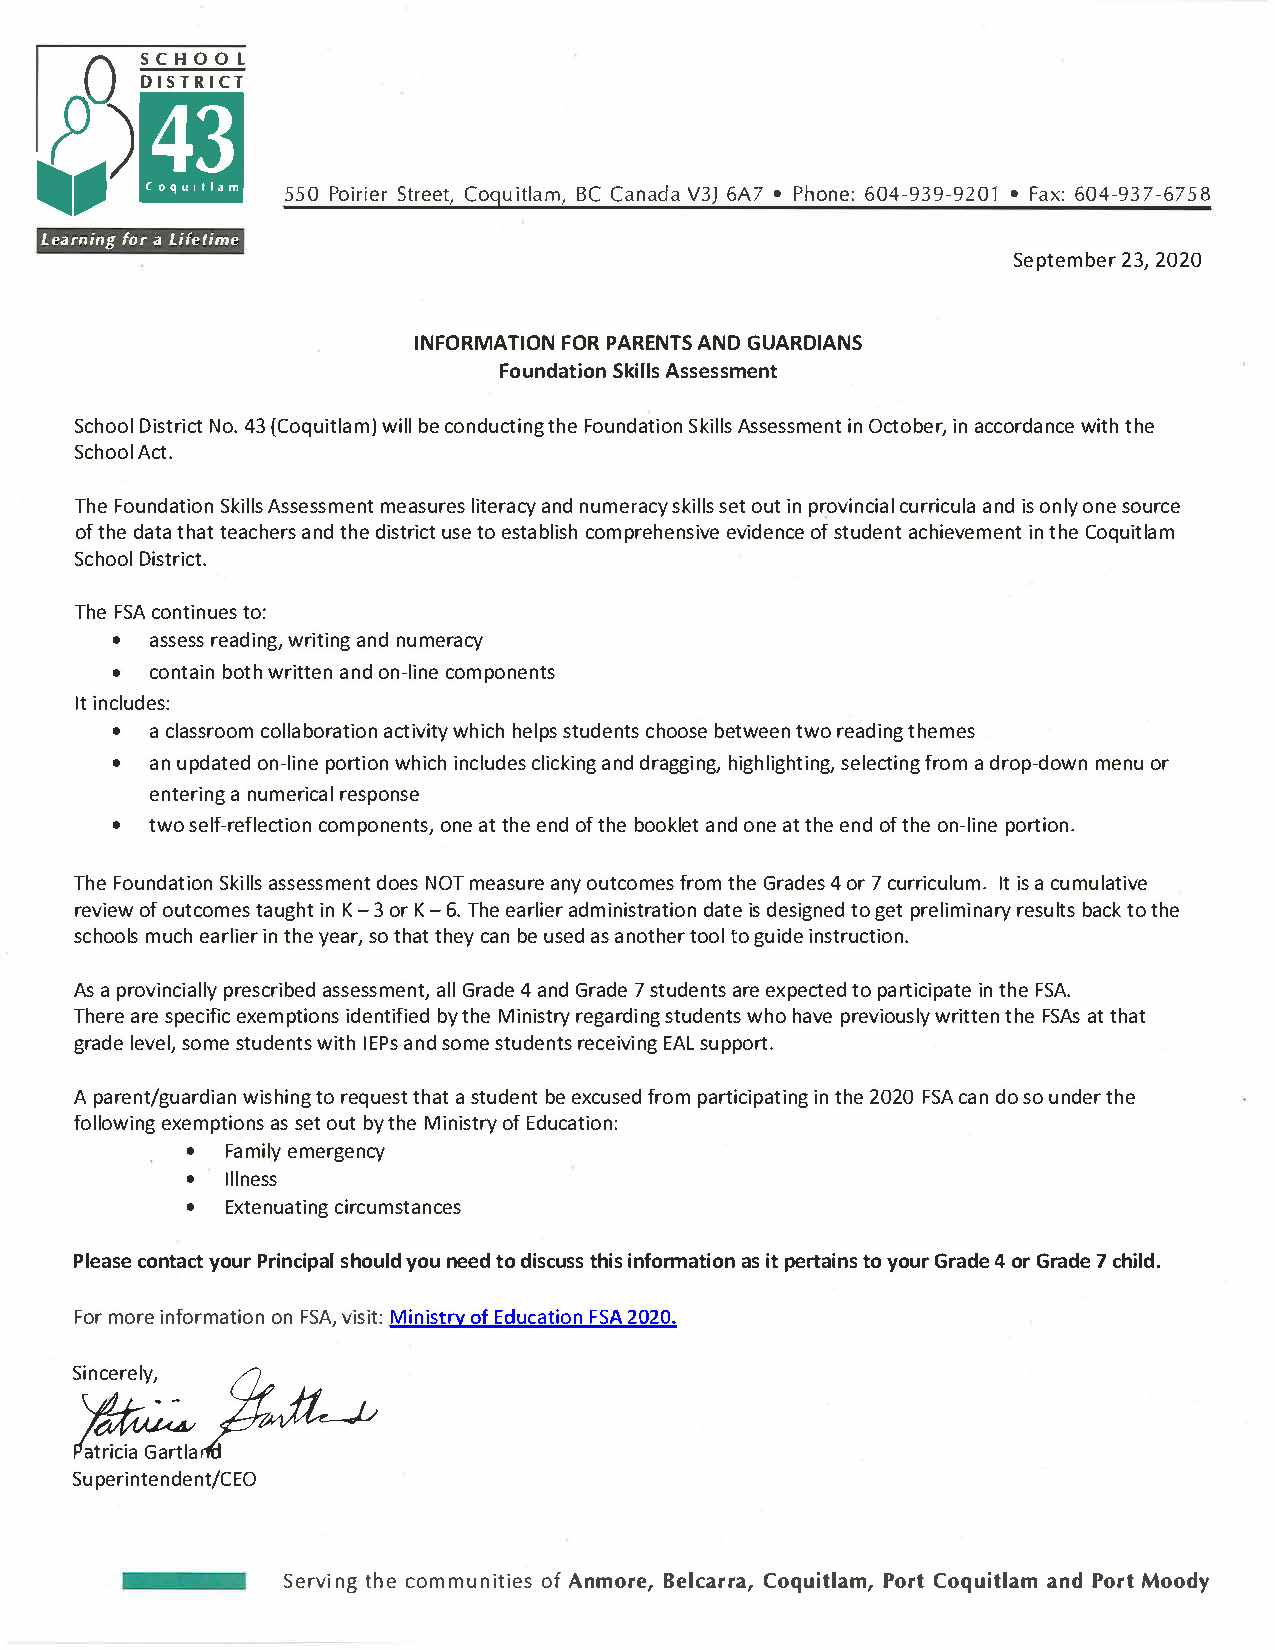 FSA Letter from Superintendent Sept 2020.jpg